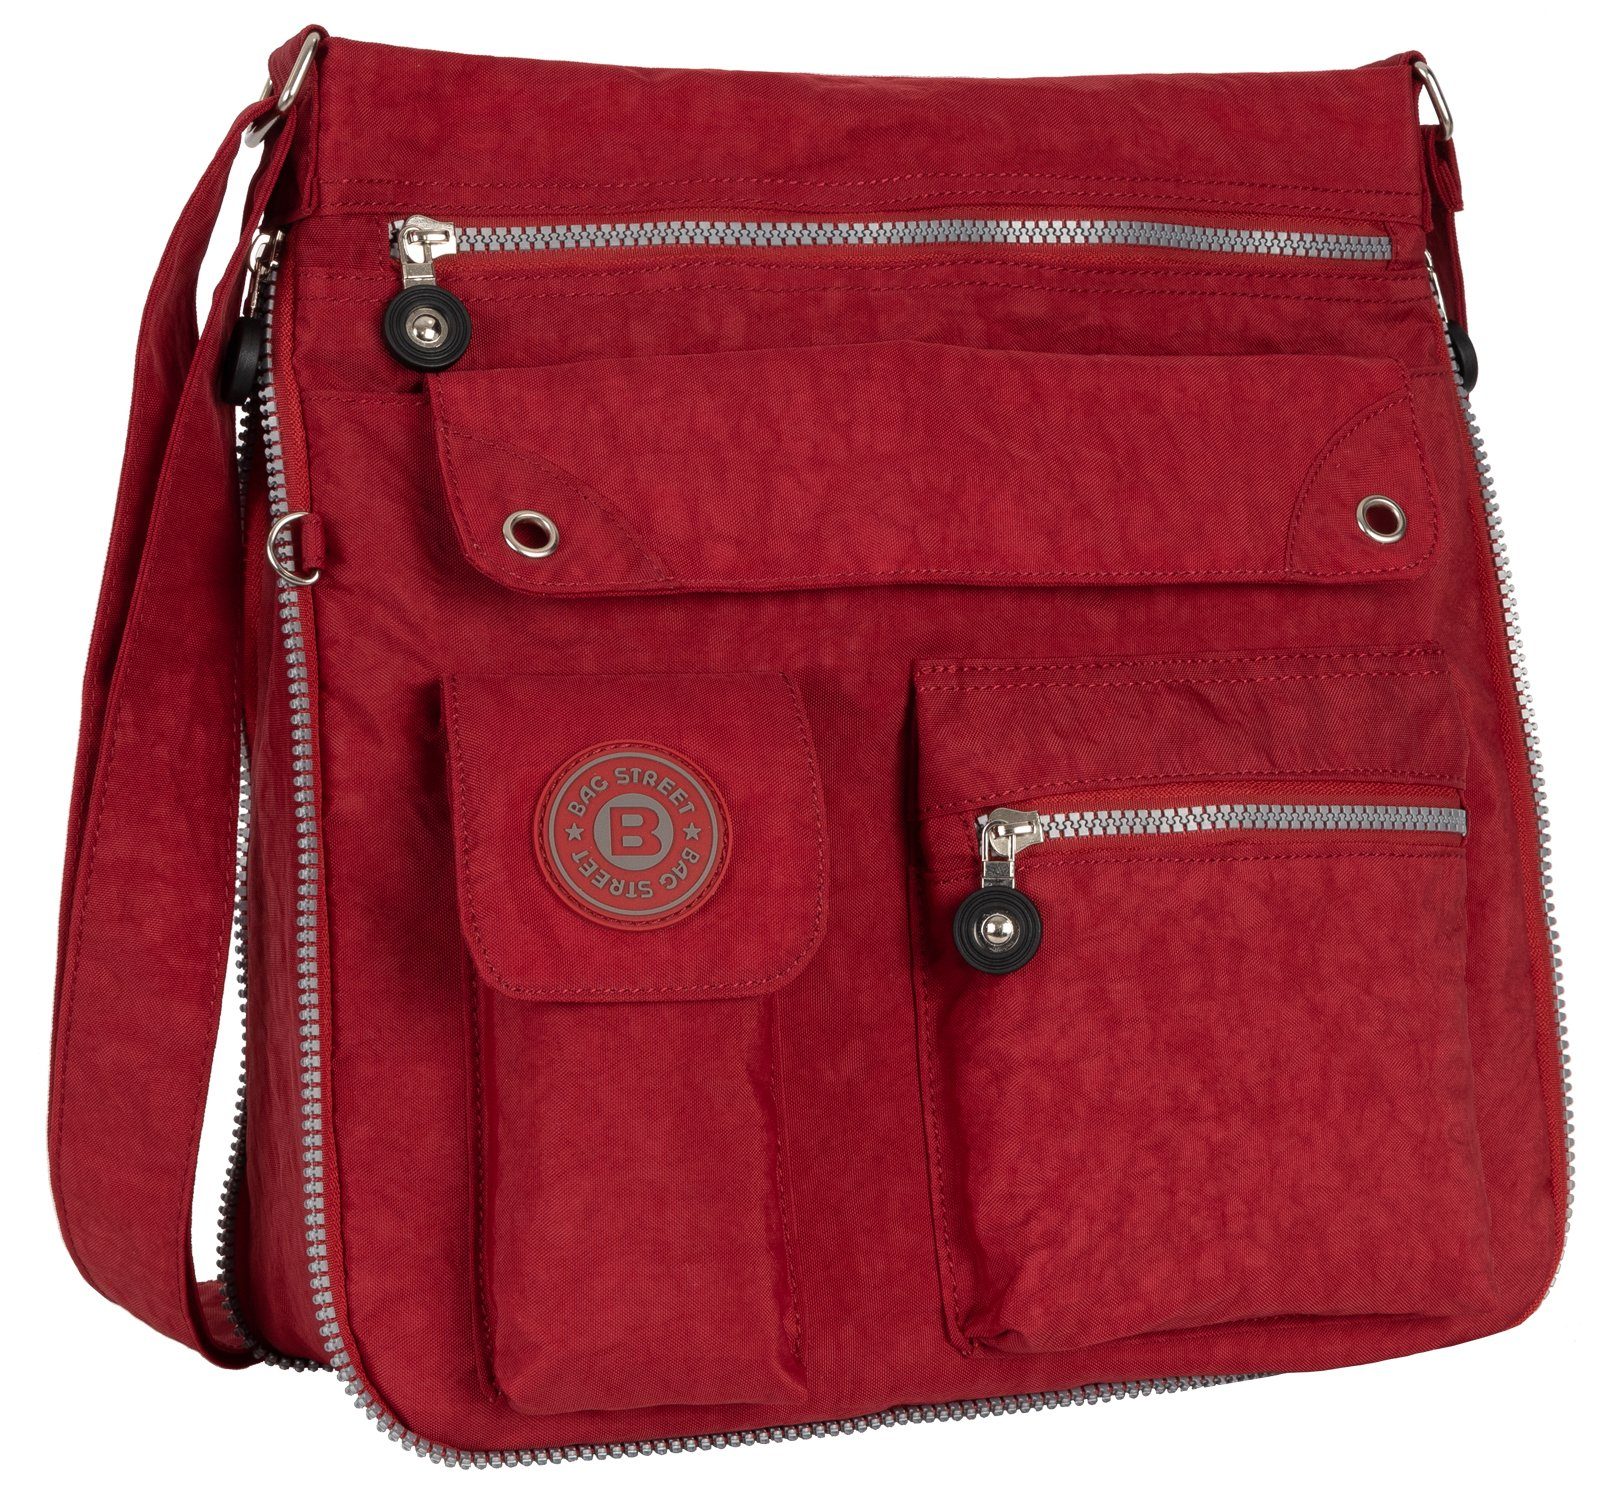 BAG STREET Schlüsseltasche Damentasche Umhängetasche Handtasche Schultertasche Schwarz, als Schultertasche, Umhängetasche tragbar Rot